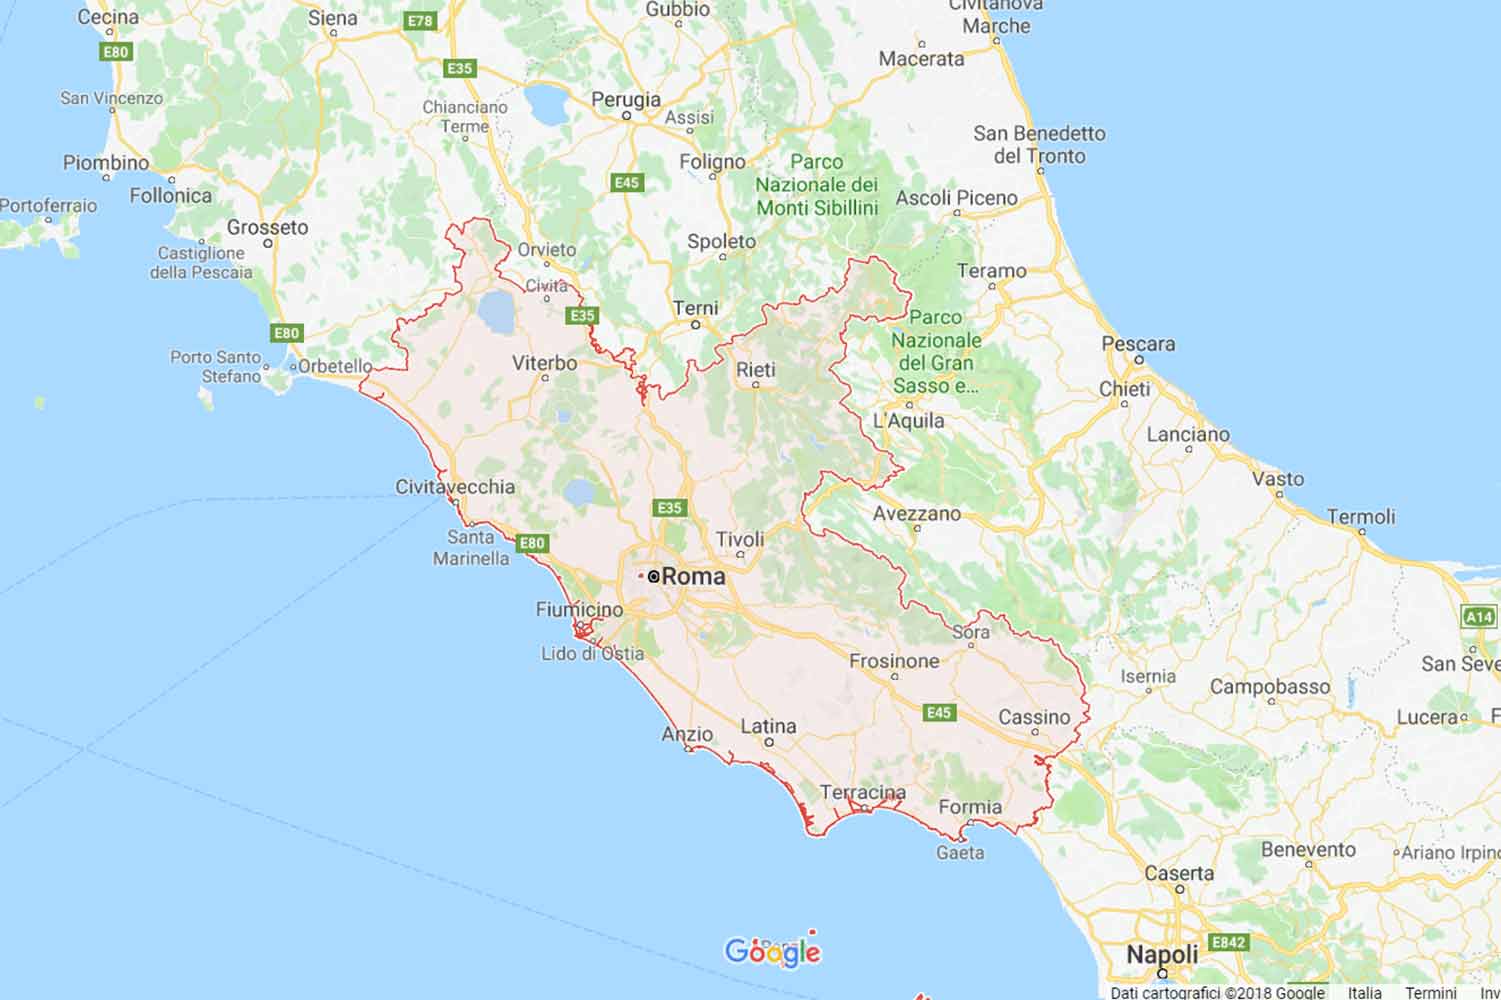 Lazio - Rieti - Colle di Tora Preventivi Veloci google maps